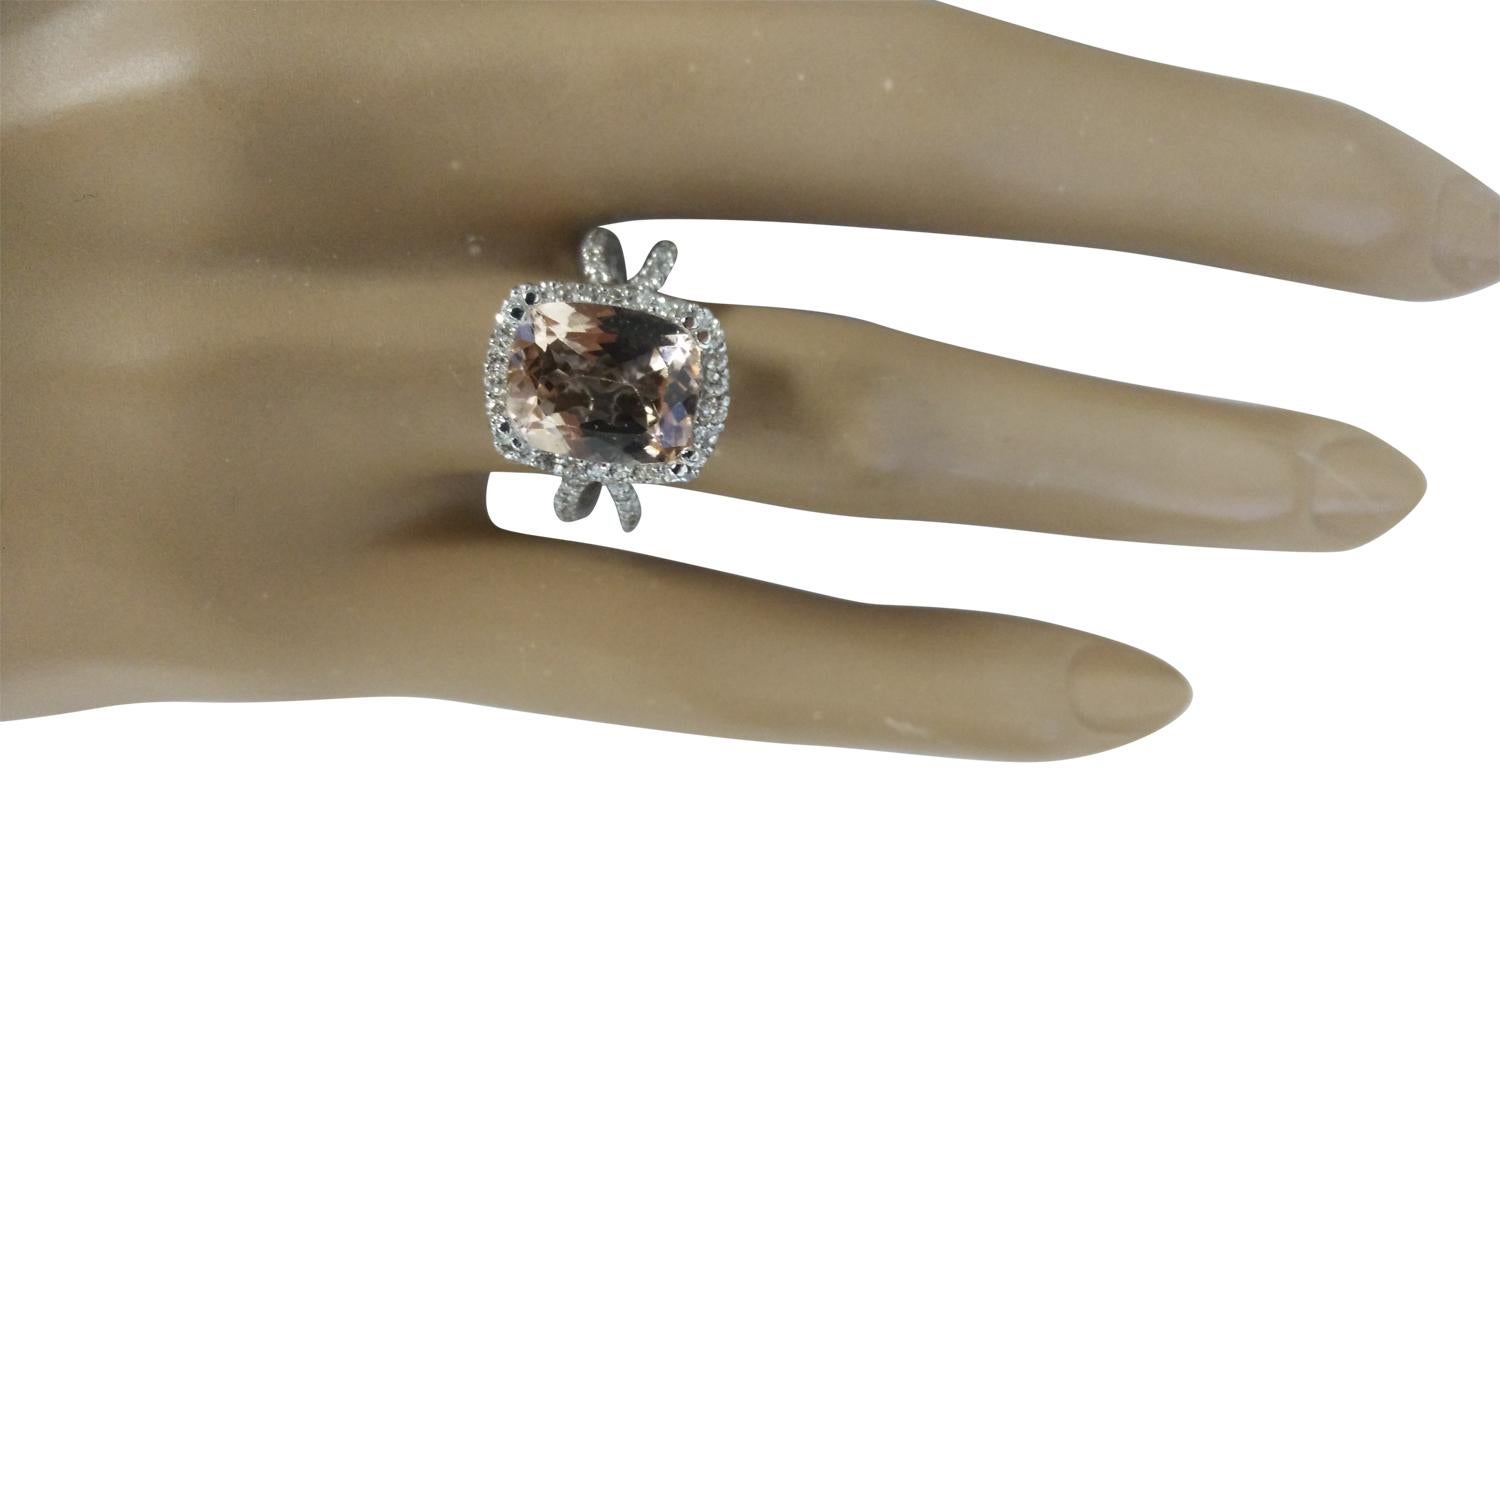 4.93 Carat Natural Morganite 14 Karat Solid White Gold Diamond Ring
Estampillé : 14K 
Poids total de l'anneau : 5,7 grammes 
Poids de la Morganite : 4.23 Carat (11.00x9.00 Millimètres)  
Poids du diamant : 0,70 carat (couleur F-G, pureté